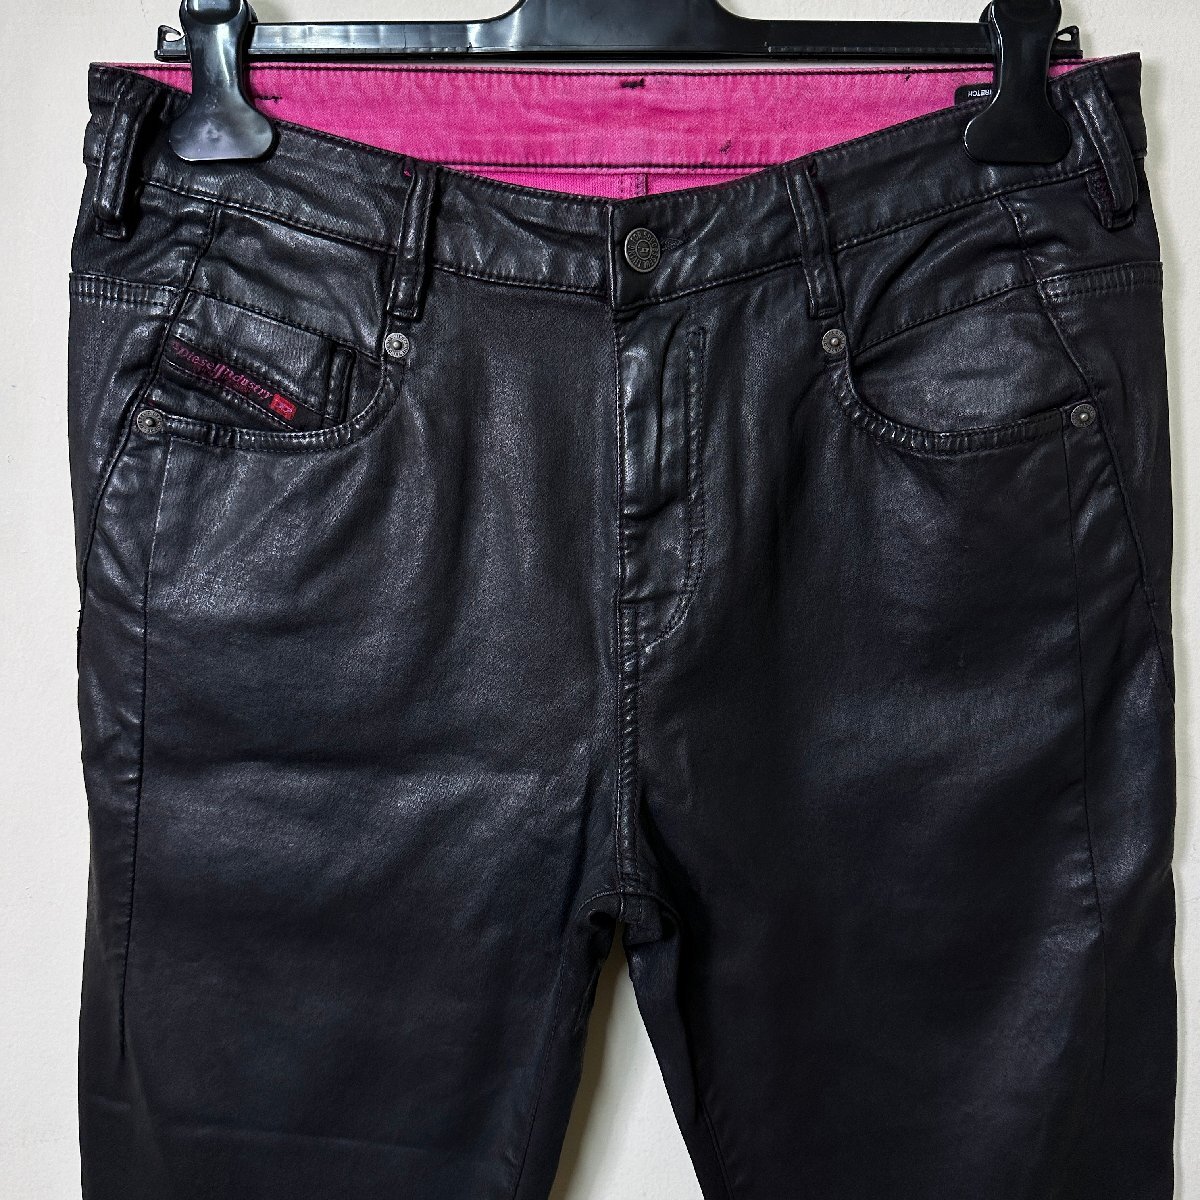  regular goods / new goods / unused /W27# outlet # regular price 41,800 jpy #DIESEL diesel lady's Jog jeans The Boy Friend color Denim N477